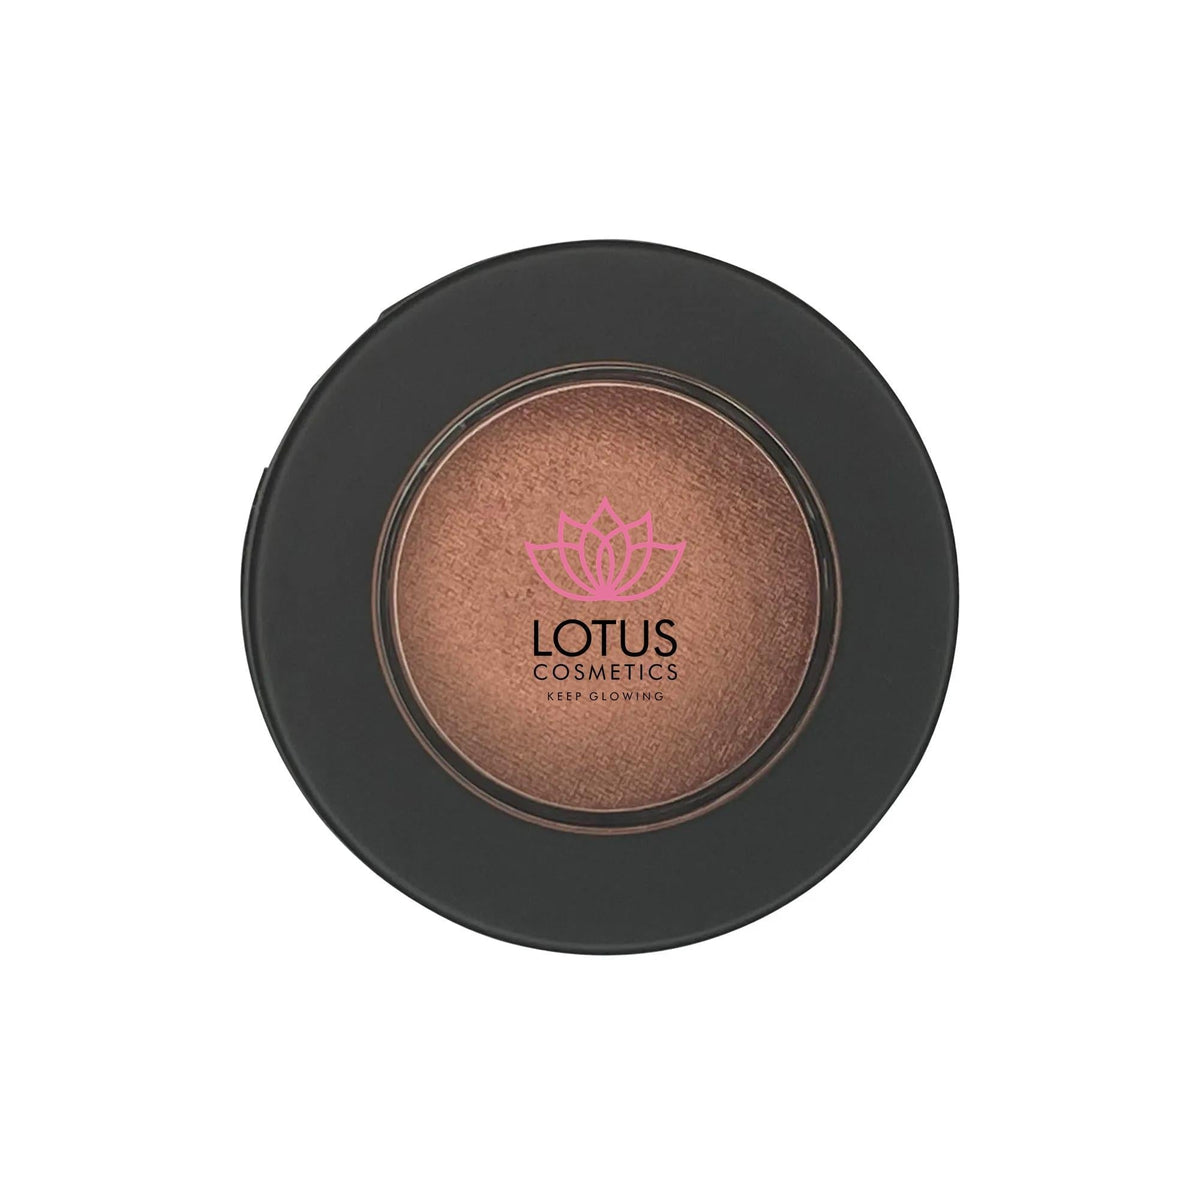 Lotus Single Pan Eyeshadow - Premium Eye Shadow from Doba - Just $19! Shop now at Ida Louise Boutique